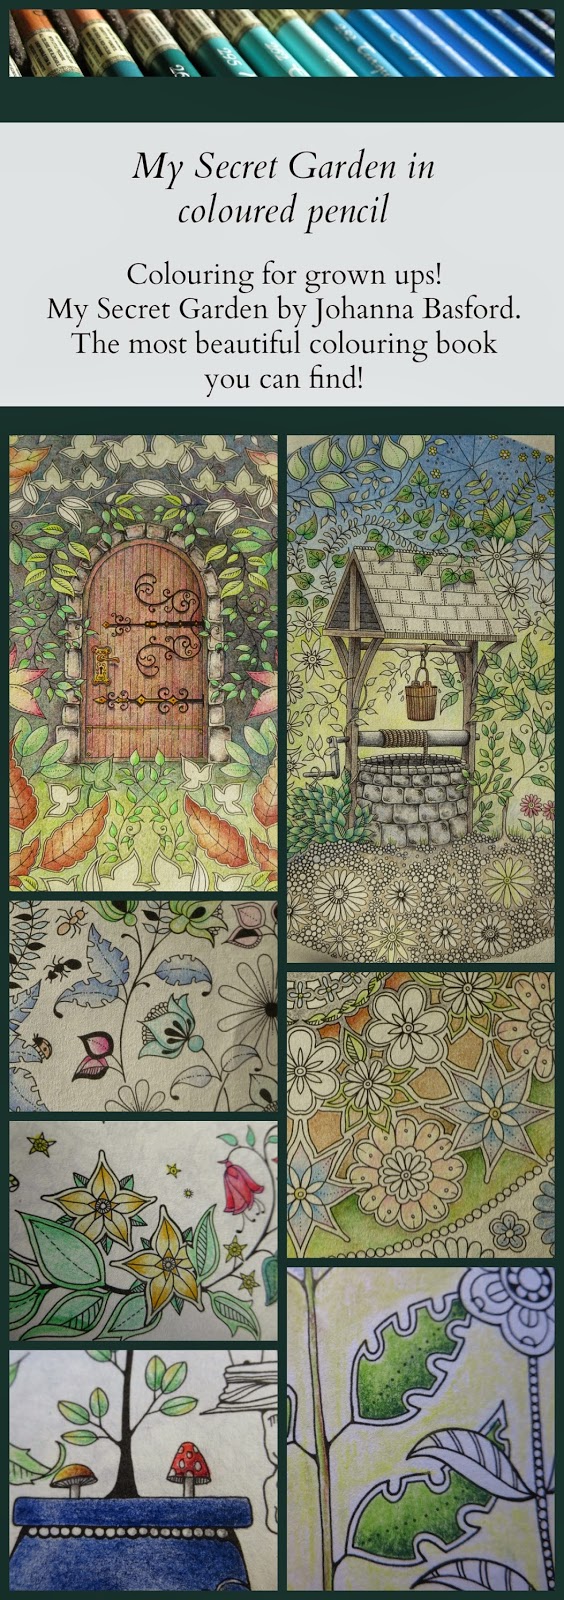 My Secret Garden colouring book part 3